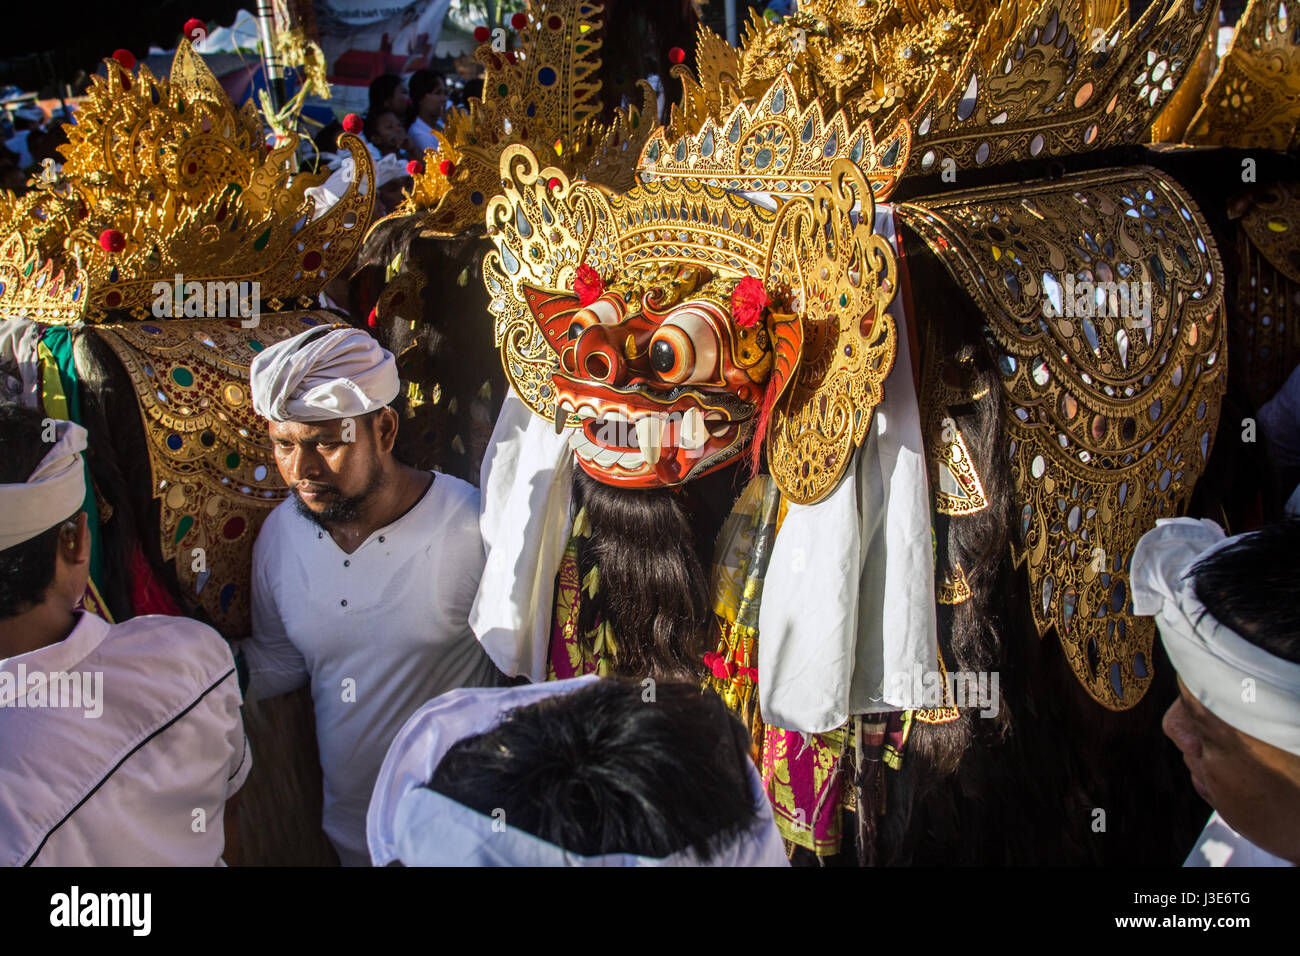 Riesige mythische Barong-Kostüm mit Künstlern und heiligen Männer. Eine wunderschön eingerichtete balinesischen Maske und Kostüm bei einer Hindu religiösen Veranstaltung in Bali Stockfoto